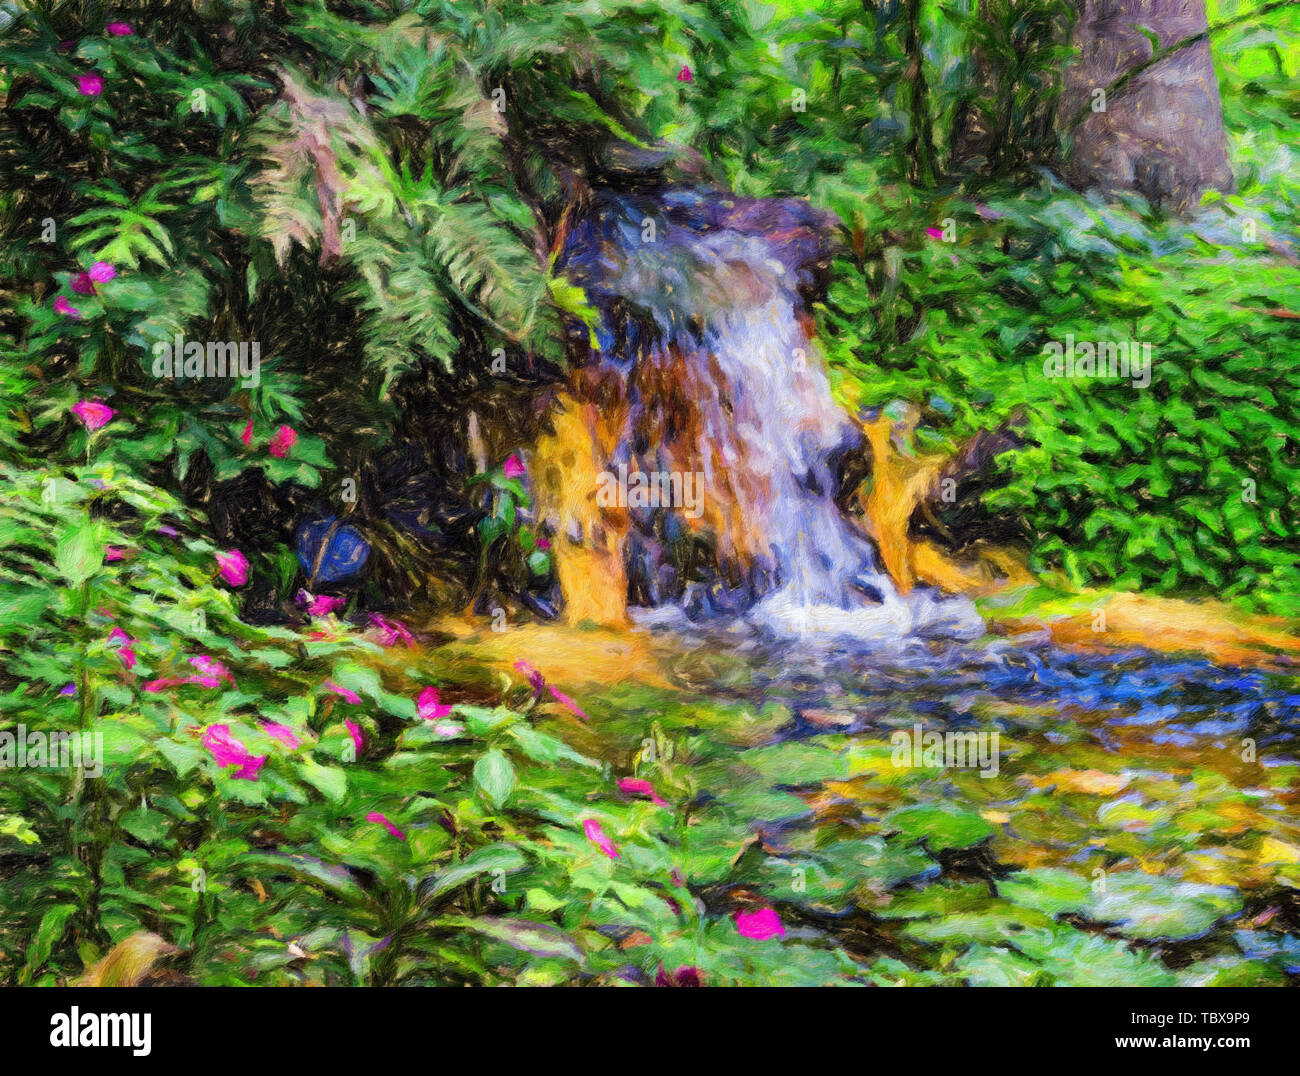 Acqua lillies, Nymphaeaceae, in tropicale lussureggiante foresta pluviale brasiliana con cascata - Claude Monet stile manipolazione digitale olio su tela impressioni Foto Stock